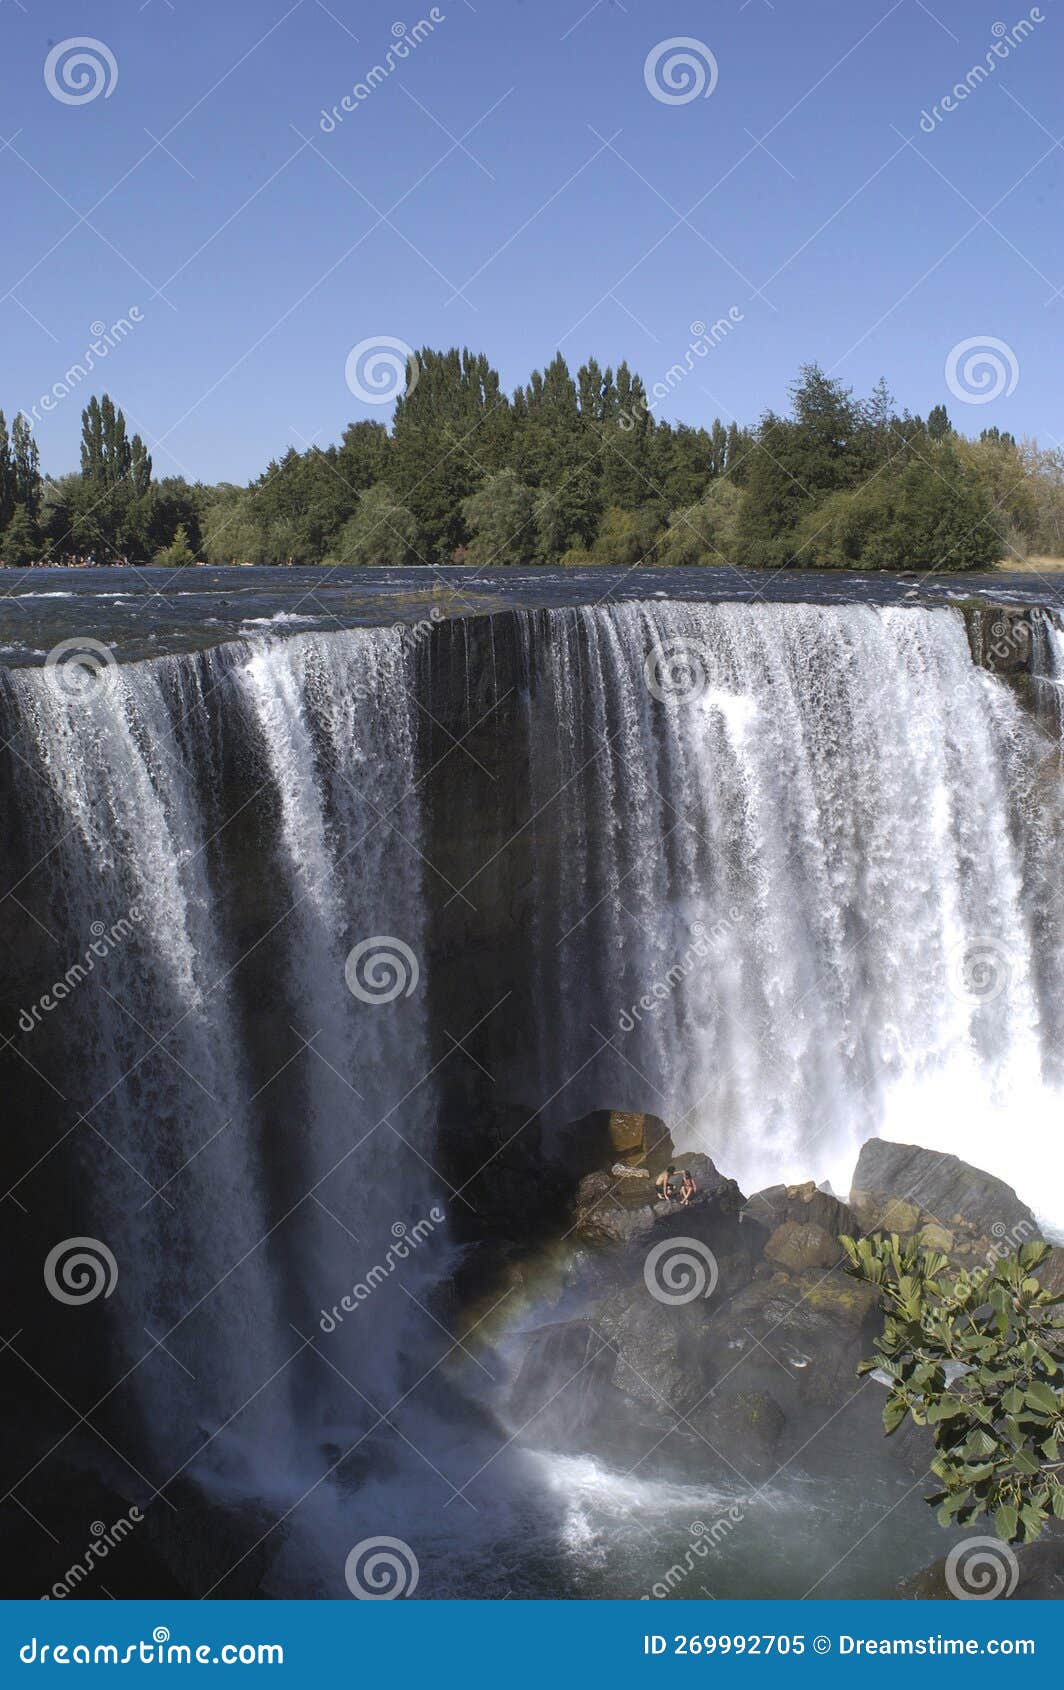 the saltos del laja or salto del laja, are four waterfalls of the la laja river, located in the bio bio region of chile